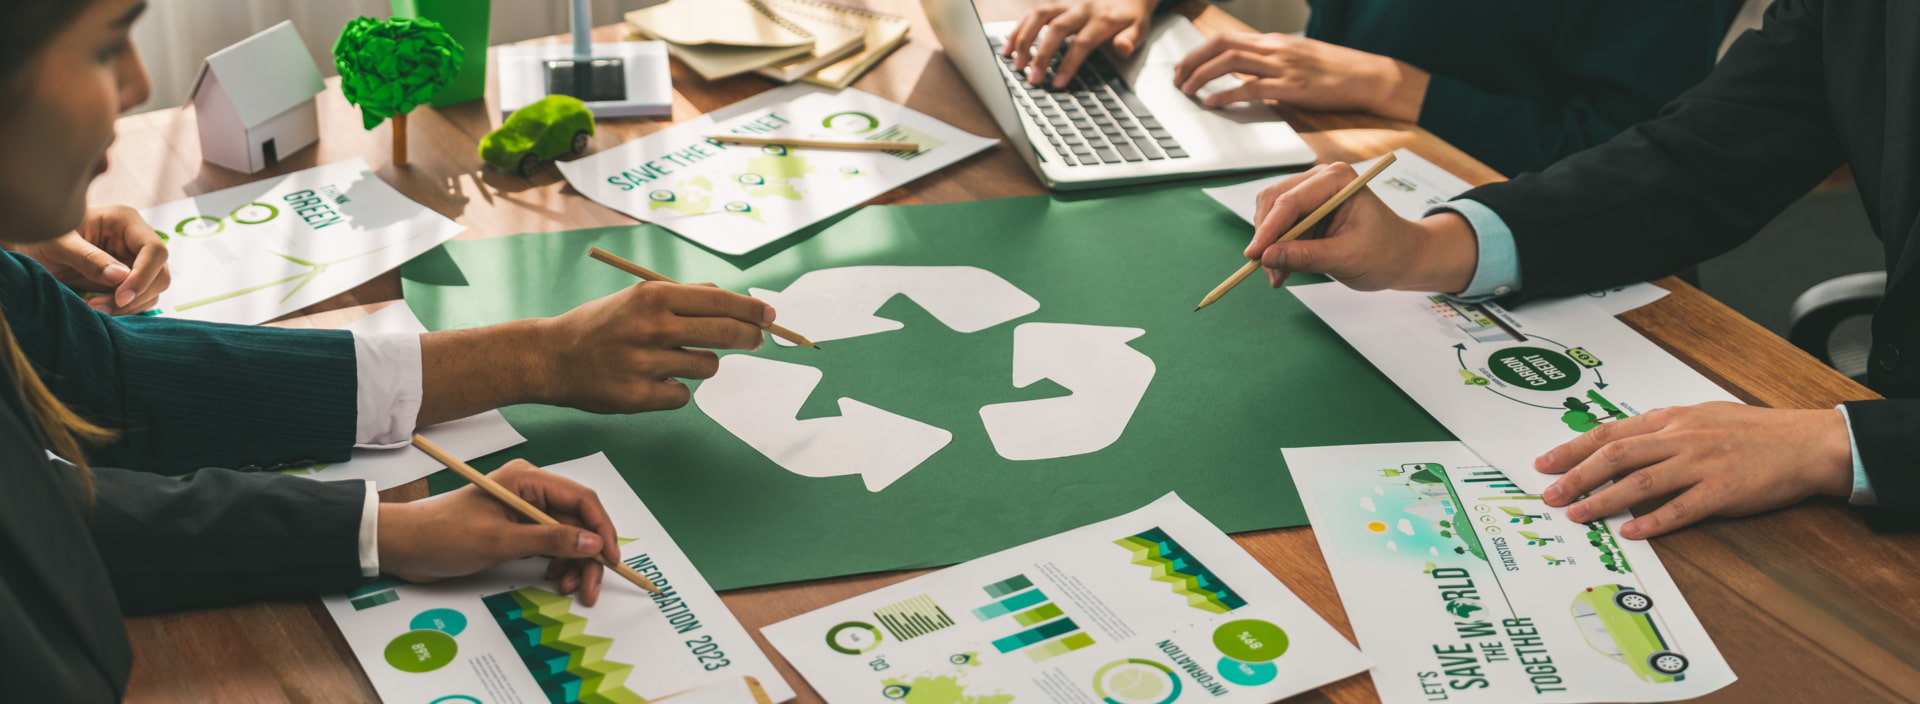 ¿Qué empresas están obligadas a realizar una gestión de sus residuos?